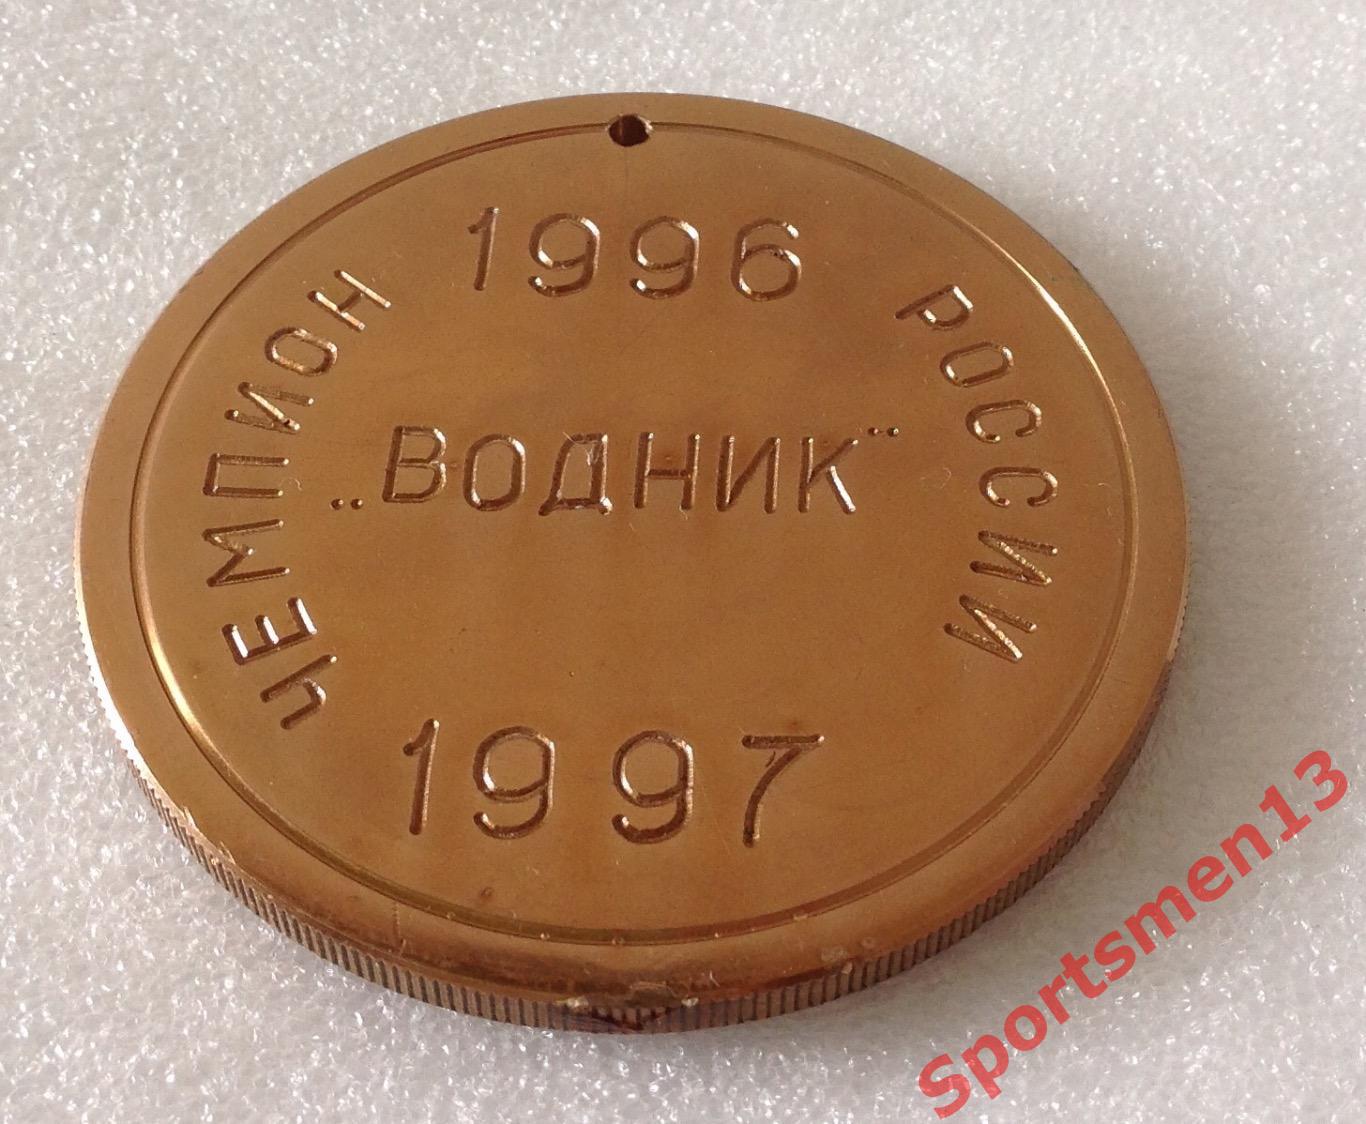 Хоккей с мячом. Медаль памятная. Водник Архангельск, 1997